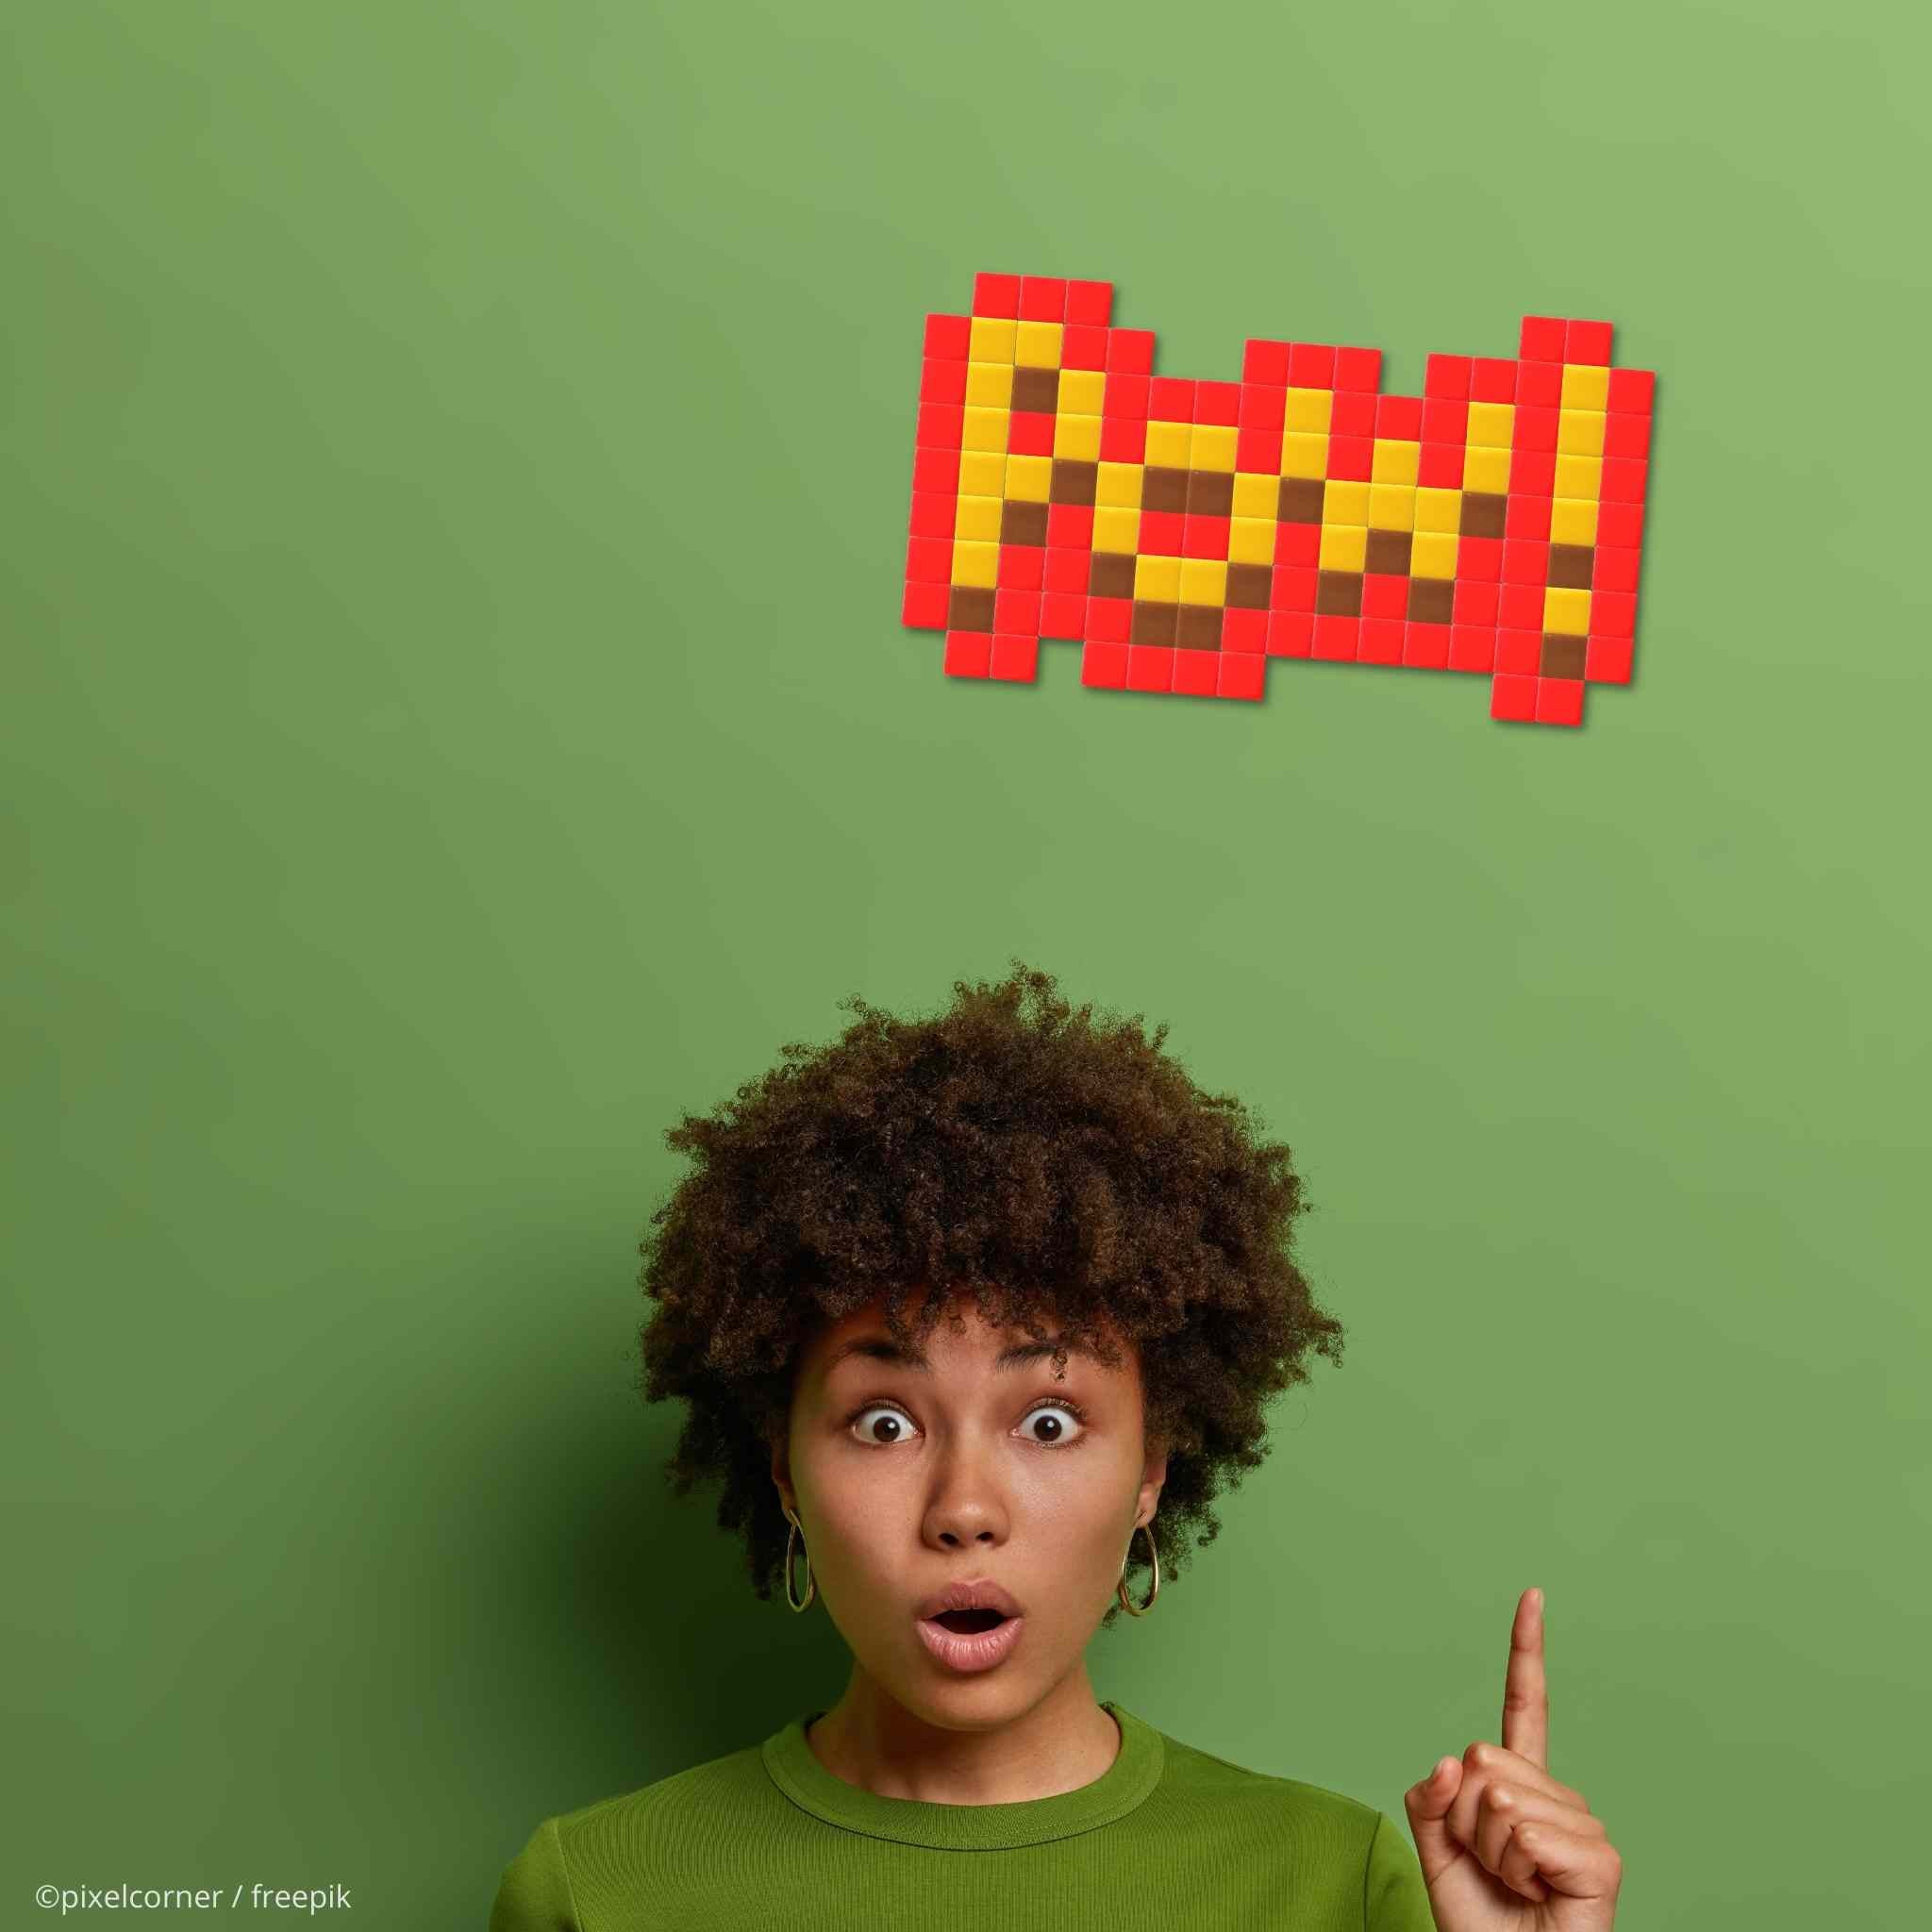 Pixel Art Kit "POW!" par Pixel Corner - Kits de loisirs créatifs